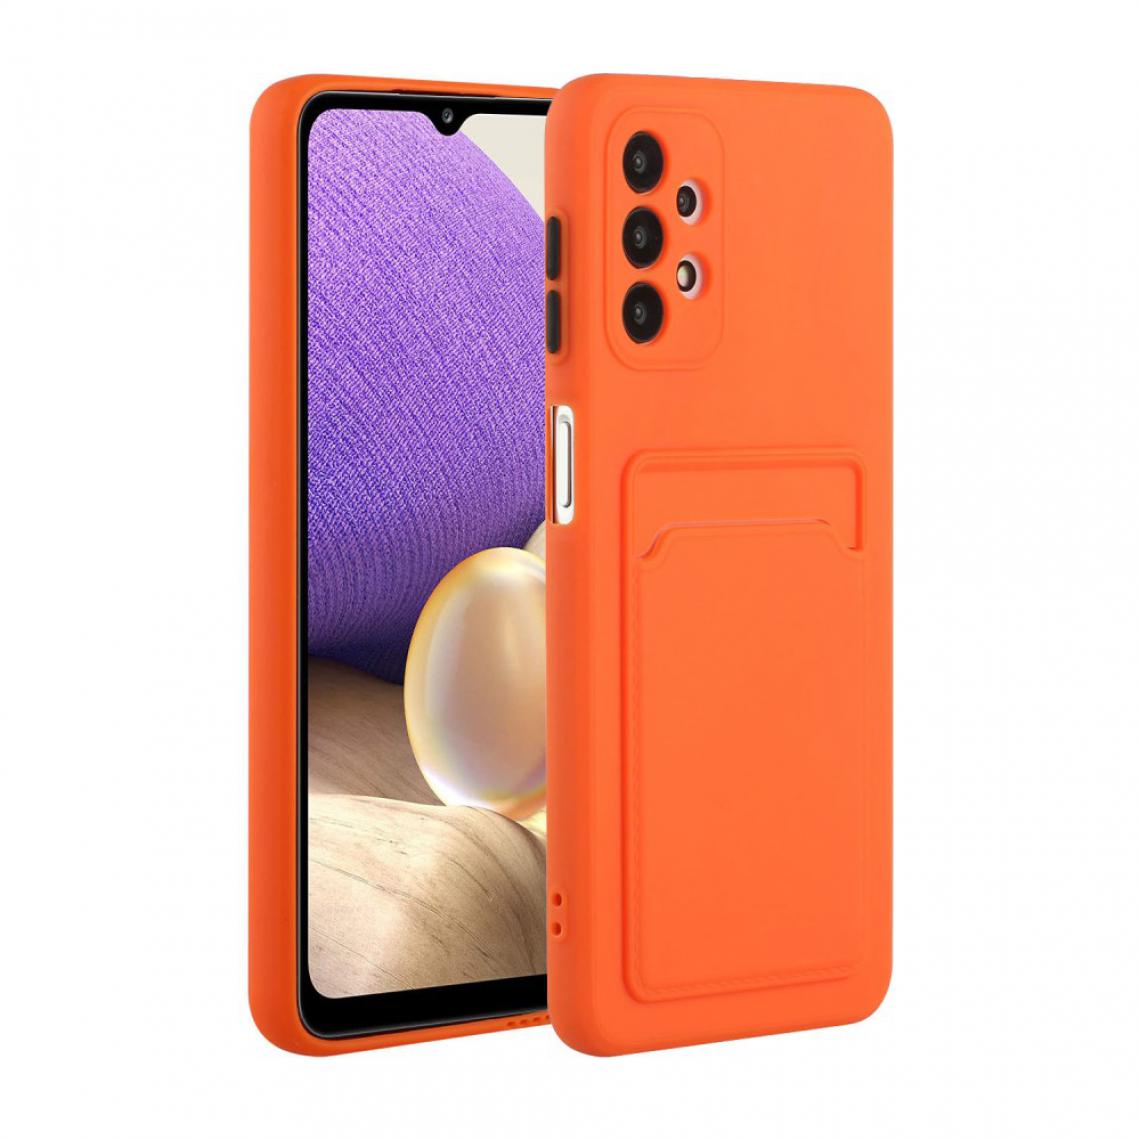 Other - Coque en TPU Fente pour carte flexible orange pour votre Samsung Galaxy A52 4G/5G - Coque, étui smartphone